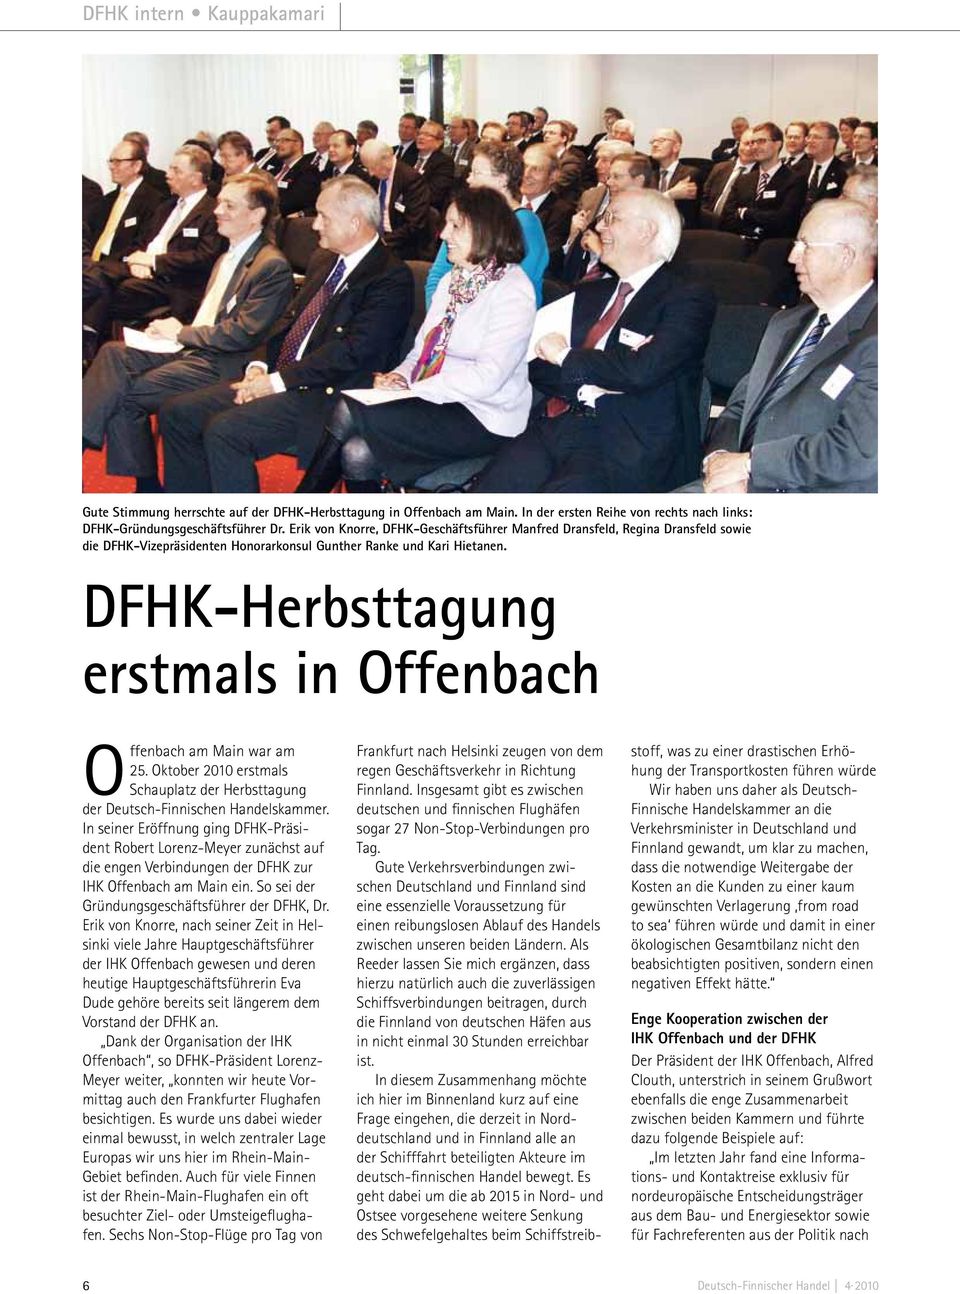 DFHK-Herbsttagung erstmals in Offenbach Offenbach am Main war am 25. Oktober 2010 erstmals Schauplatz der Herbsttagung der Deutsch-Finnischen Handelskammer.